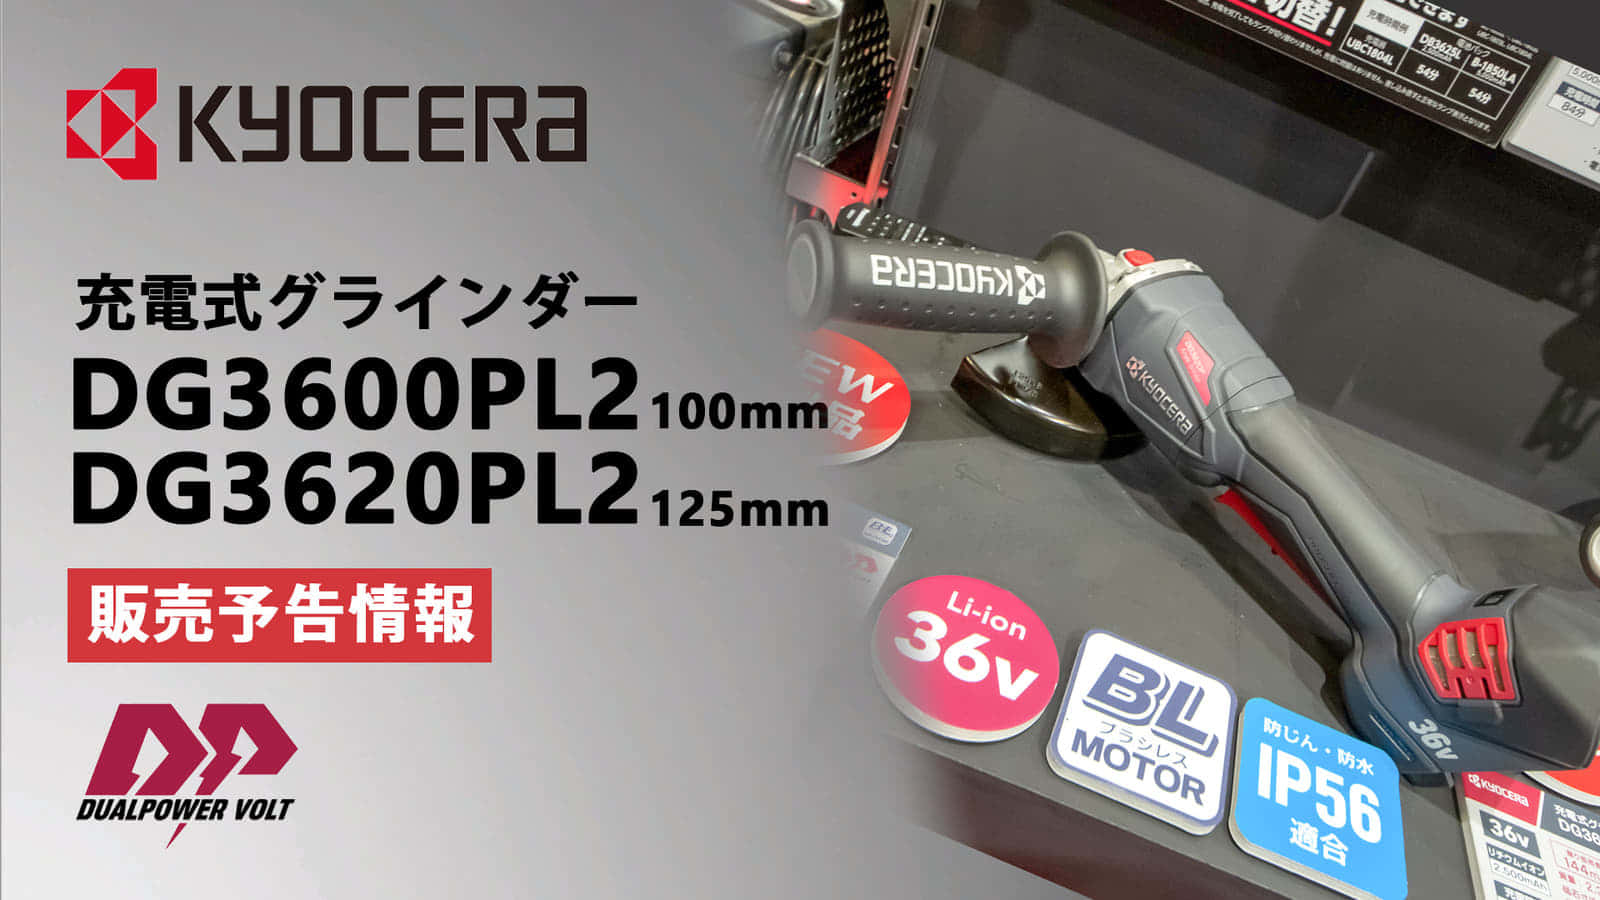 京セラ DG3600PL2 充電式グラインダーを発売、DPシリーズ初の36V充電式電動工具